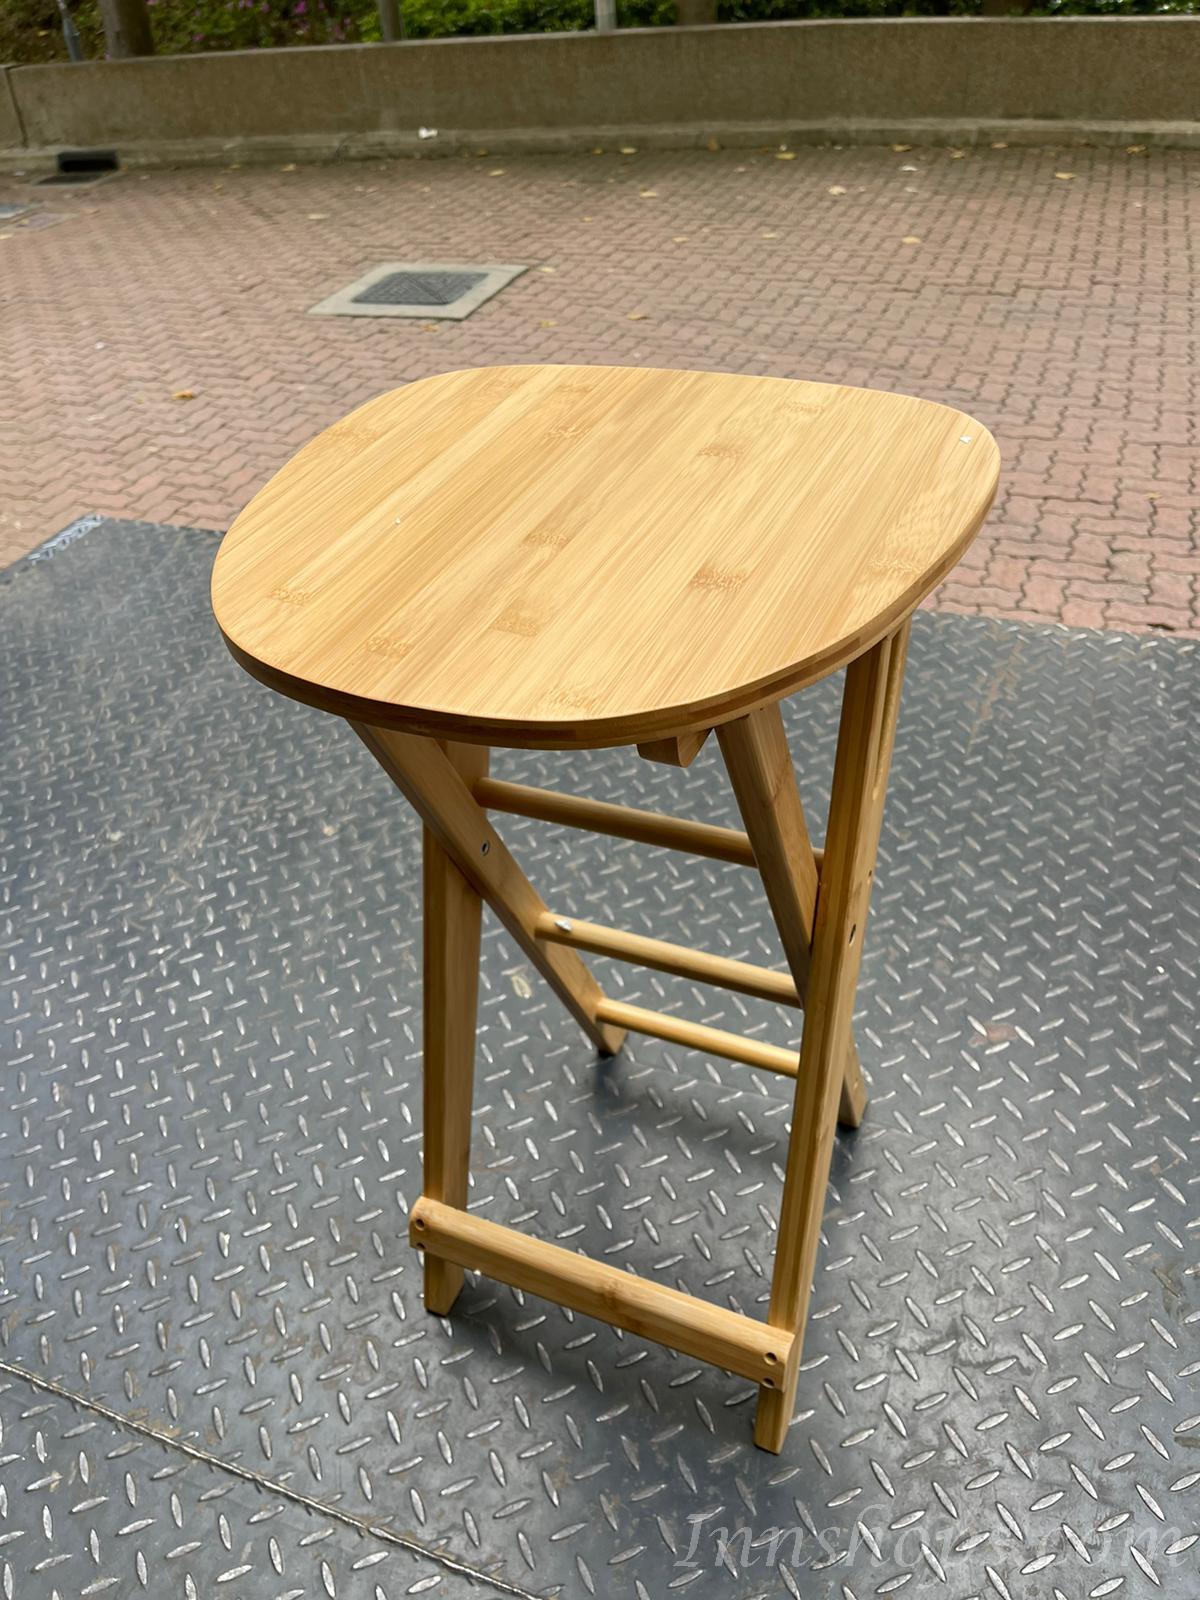 竹製摺疊吧椅 (IS7475)